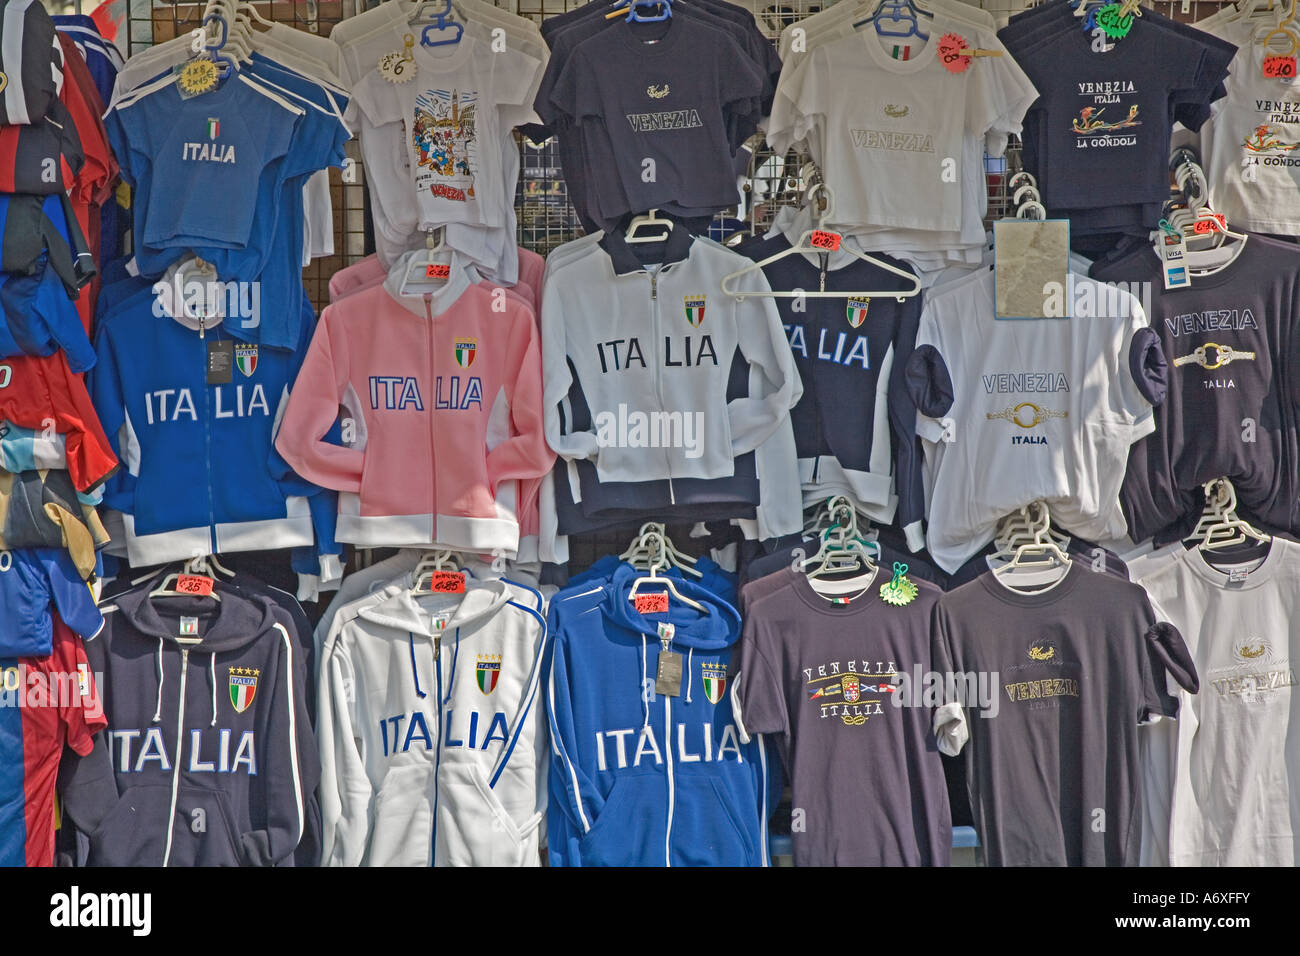 Ropa deportiva italiana, Venecia Fotografía de stock - Alamy